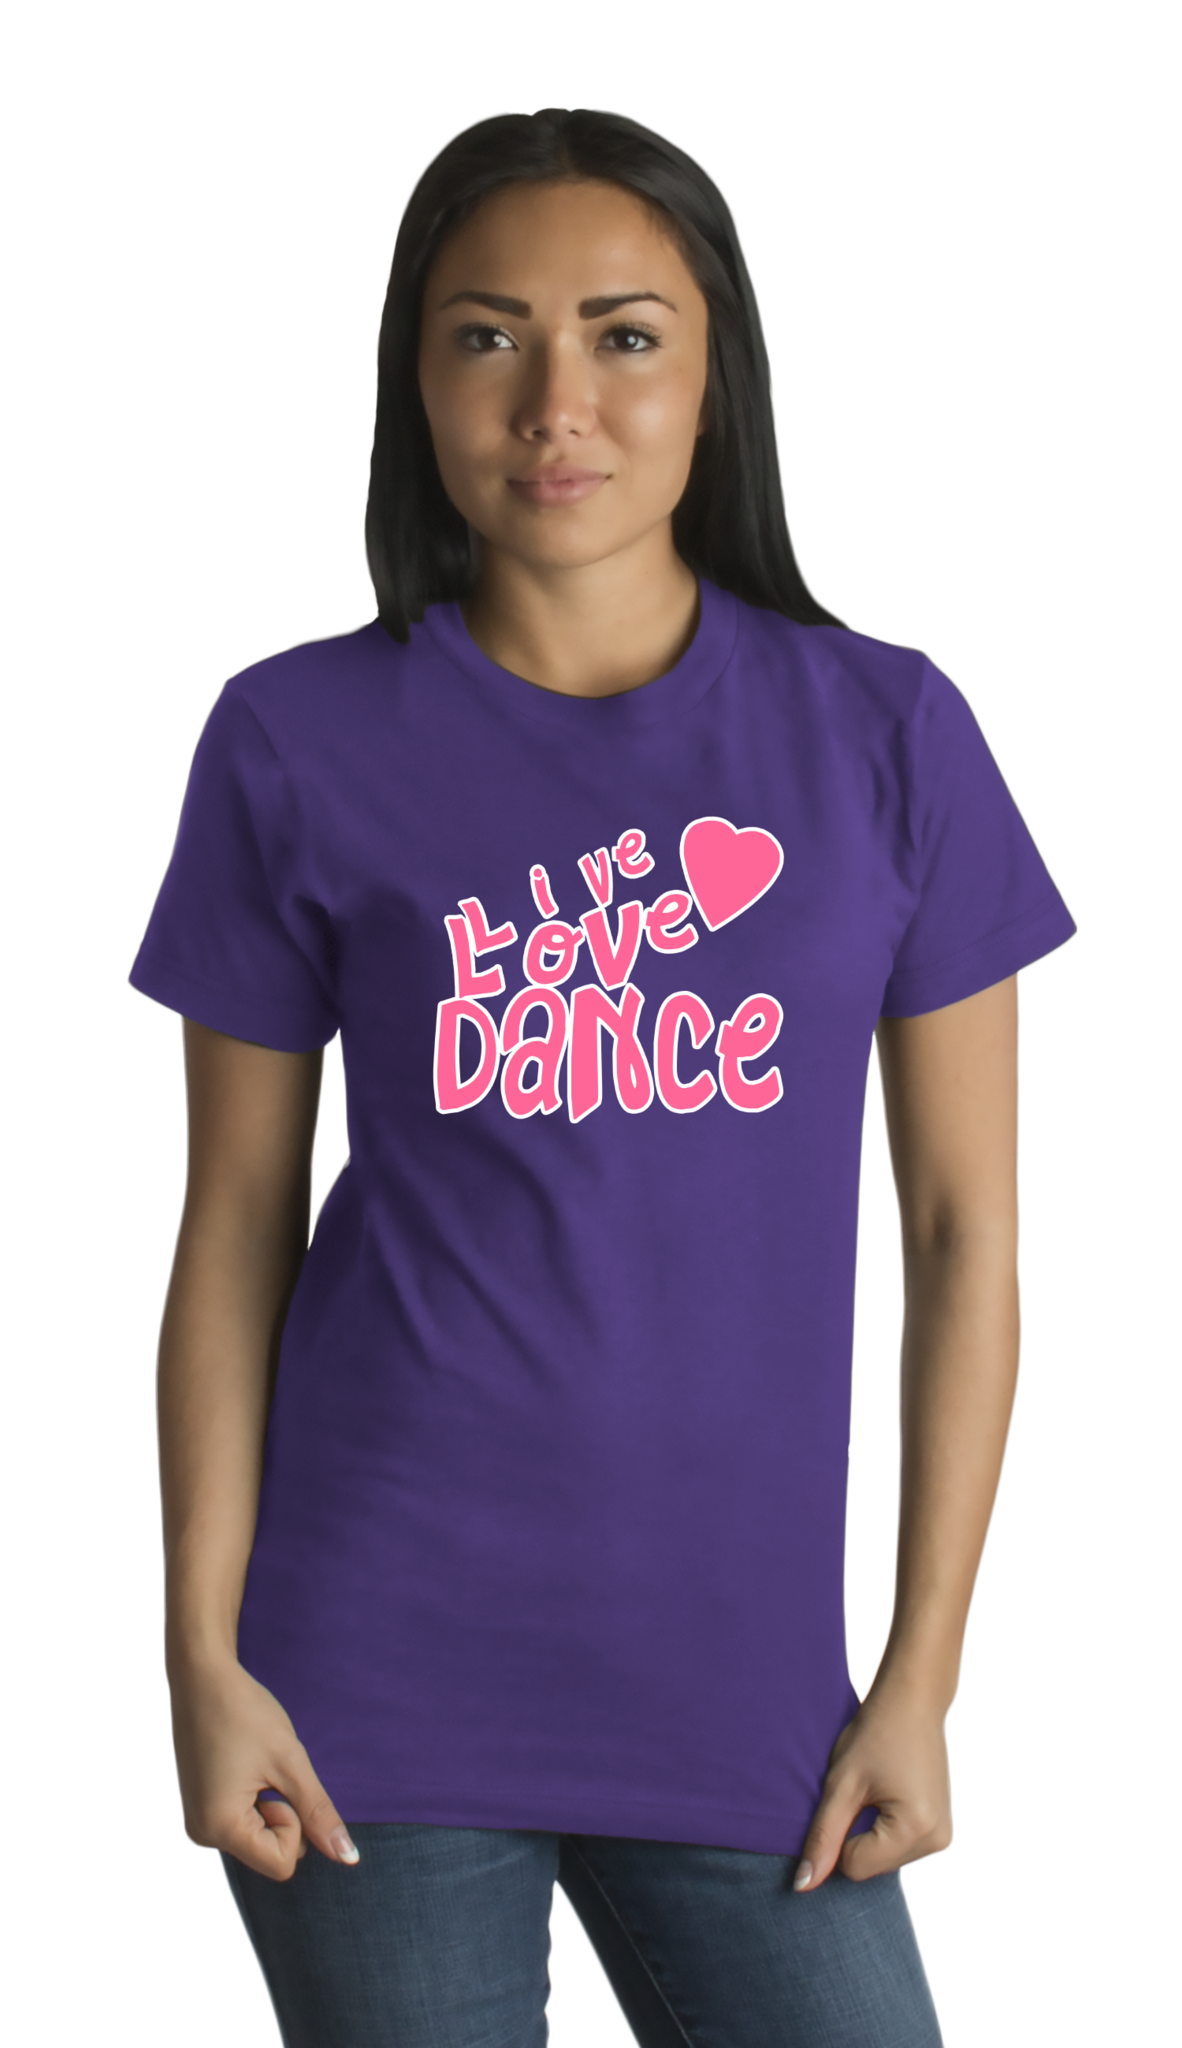 Standard Purple Live Love Dance - Dancer Dance Lover Love To Gift Fun Cute T-shirt